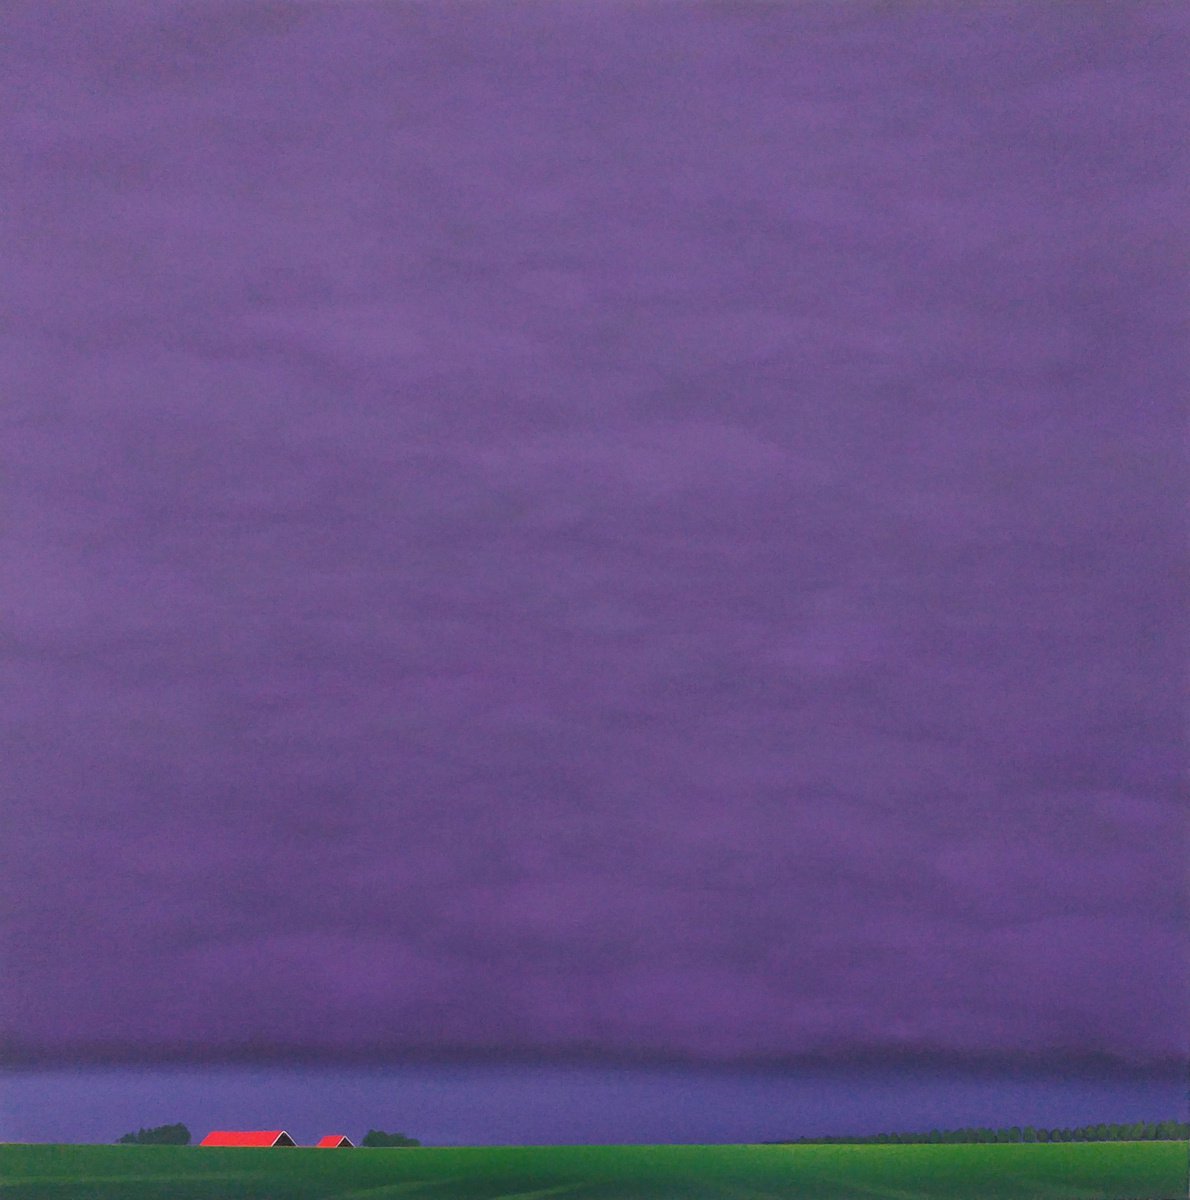 Twilight (a purple blanket of clouds) by Nelly van Nieuwenhuijzen